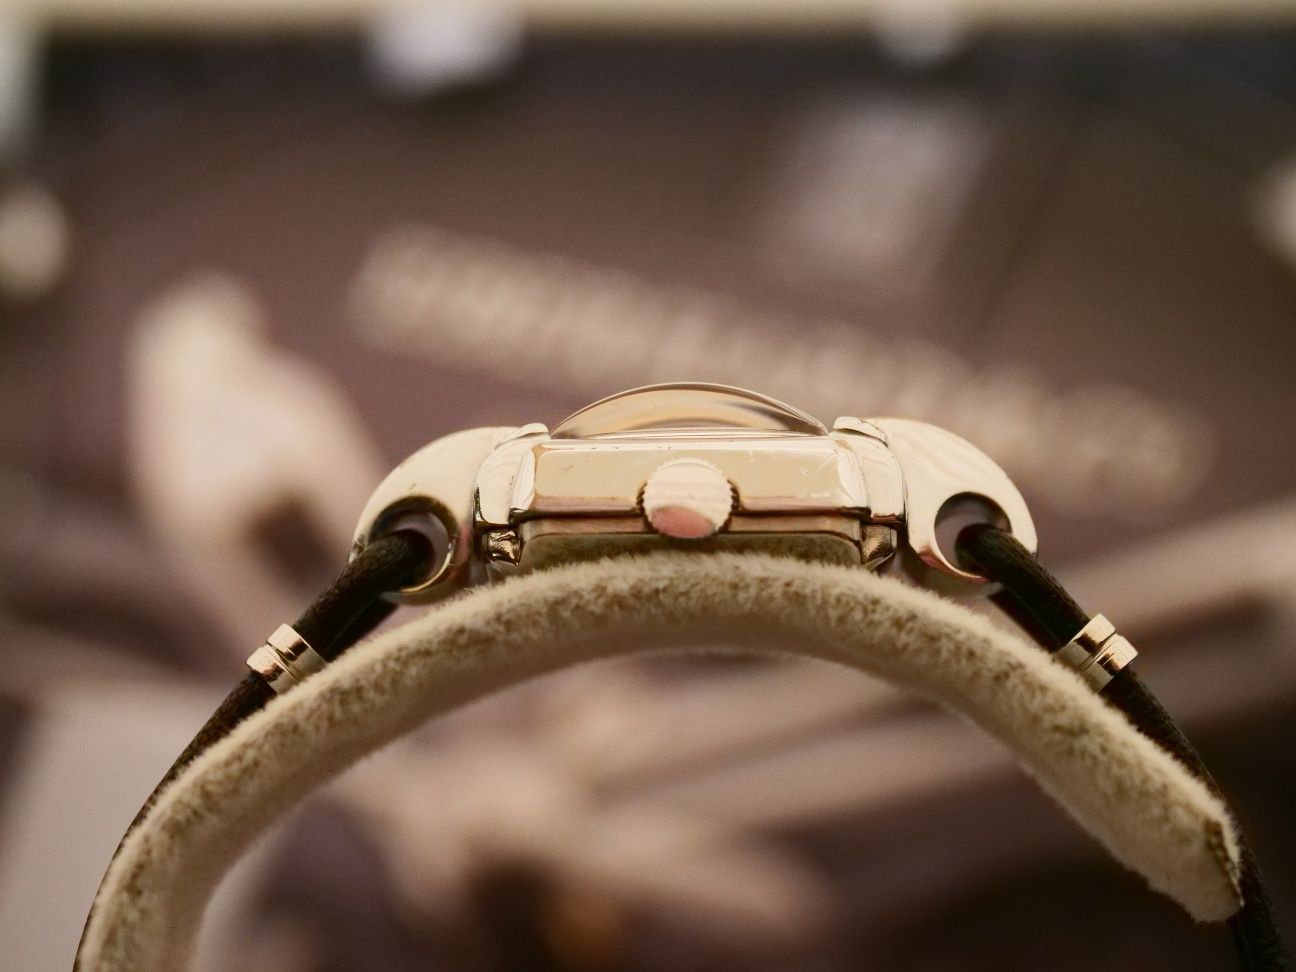 Marvin damski zegarek szwajcarski stary vintage swiss made mechaniczny